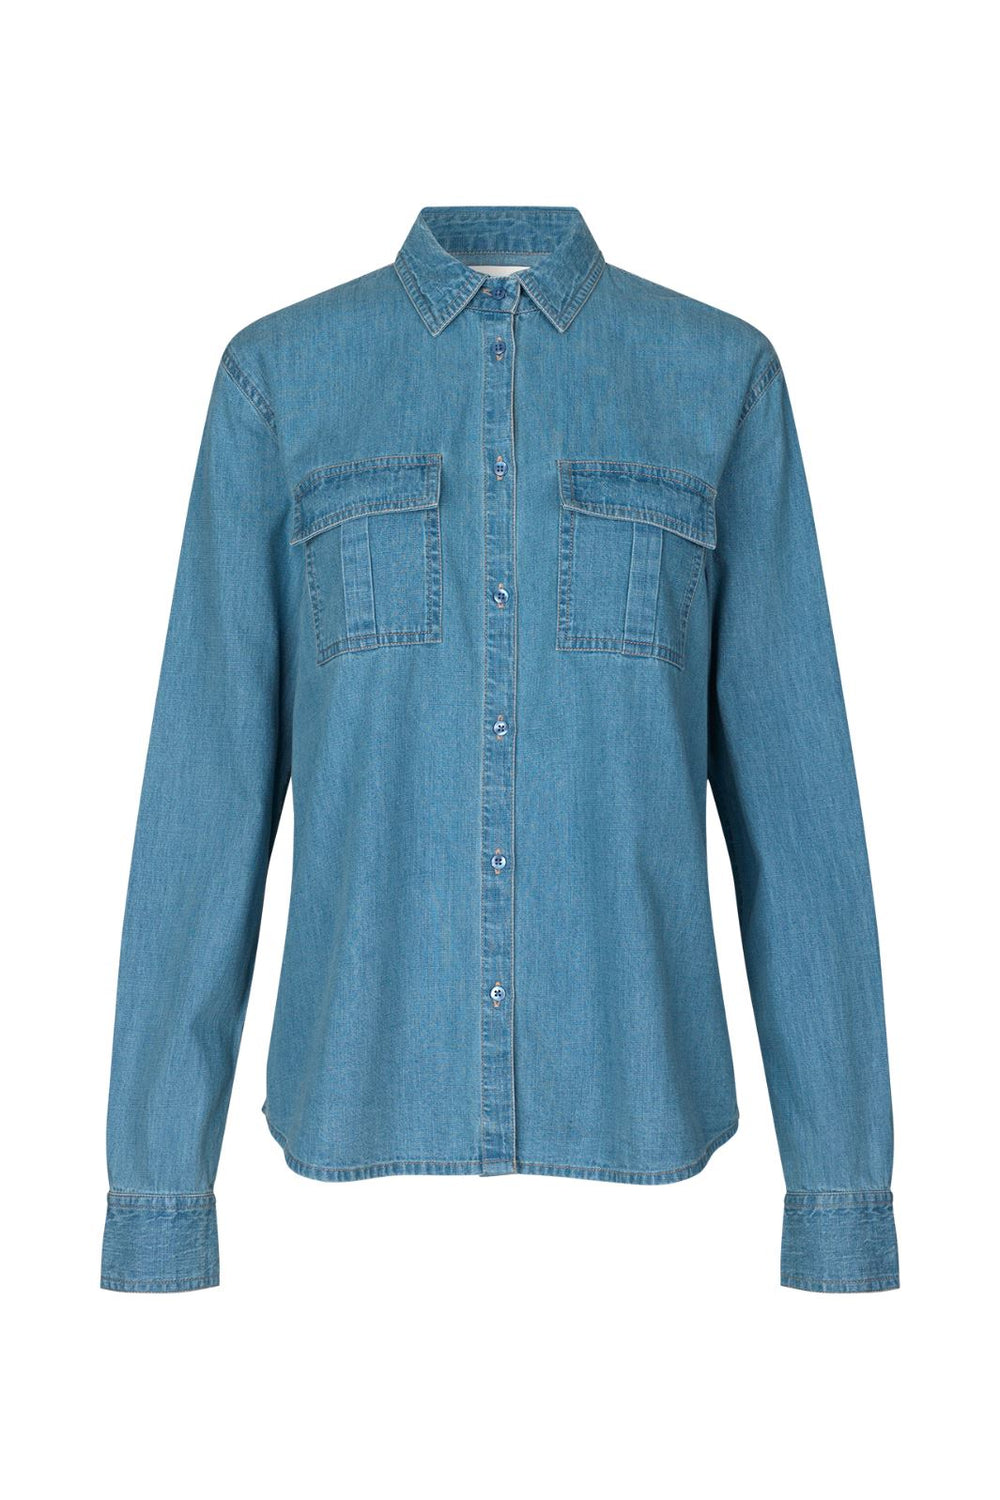 Lollys Laundry - Jalna Shirt - 22 Light Blue Skjorter 